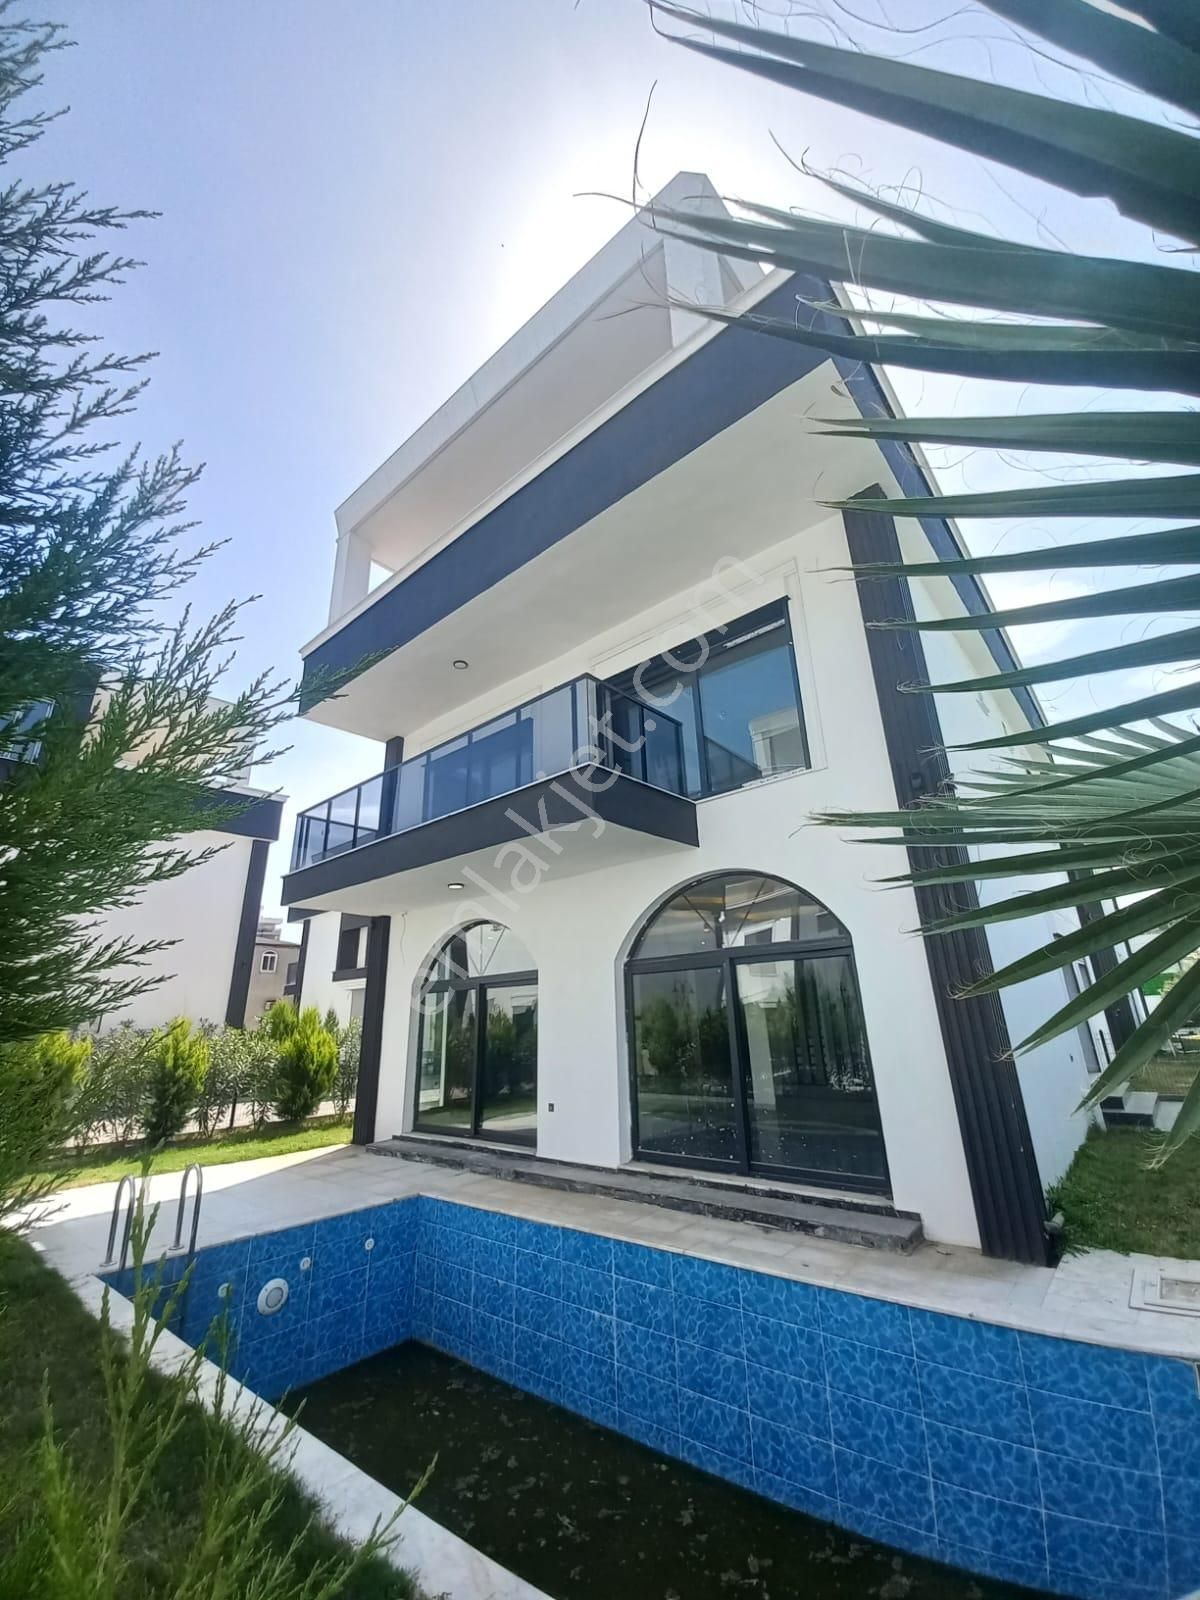 Nazilli Dallıca Satılık Villa  NAZİLLİ'DE ÖZEL PEYZAJLI VE HAVUZLU SATILIK TRİPLEKS VİLLA